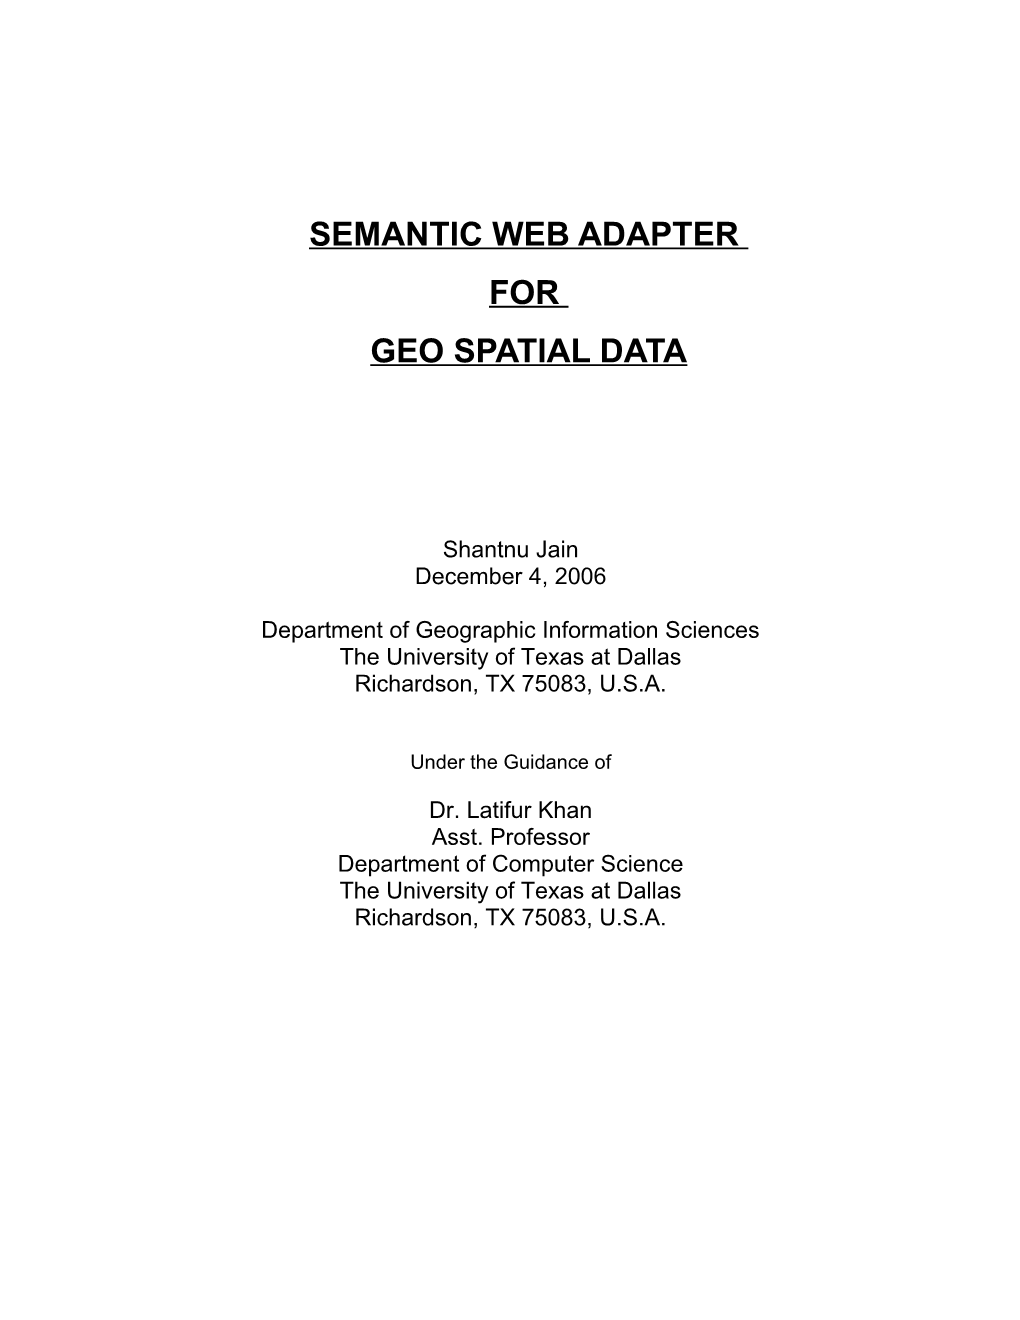 Semantic Web Adapter for Geo Spatial Data